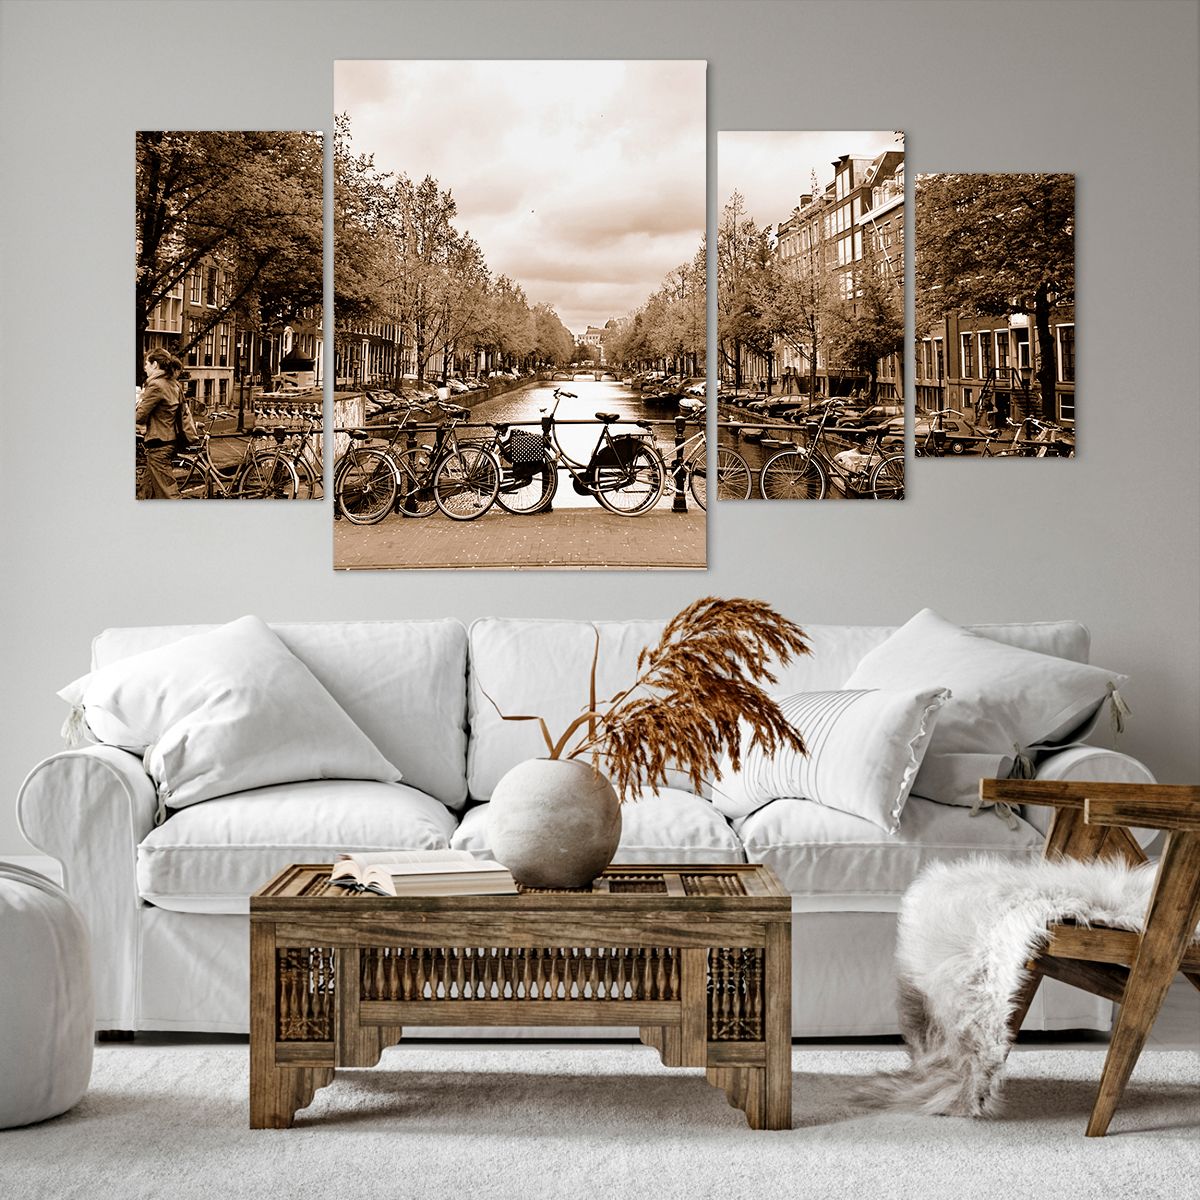 Obrazy na płótnie Miasto, Obrazy na płótnie Amsterdam, Obrazy na płótnie Rower, Obrazy na płótnie Most, Obrazy na płótnie Holandia